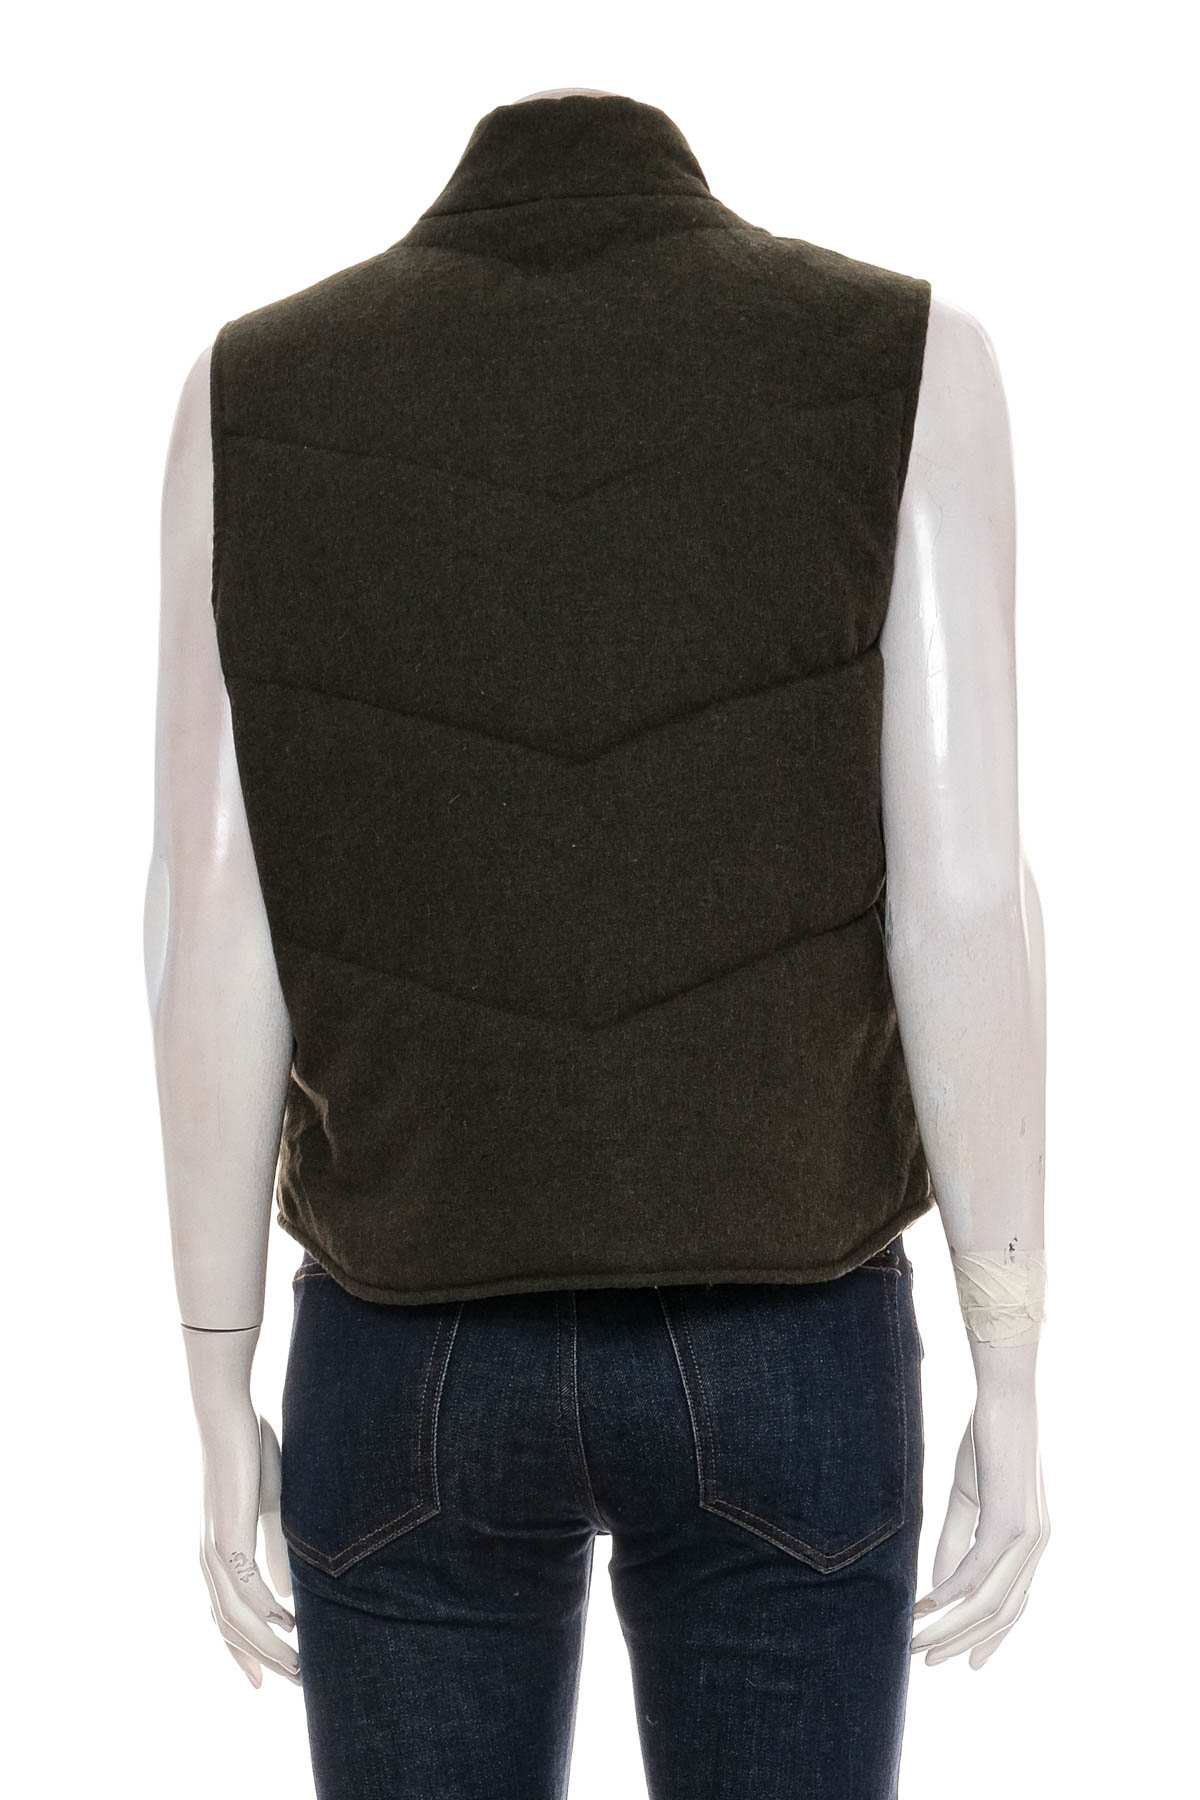 Women's vest - GAP - 1